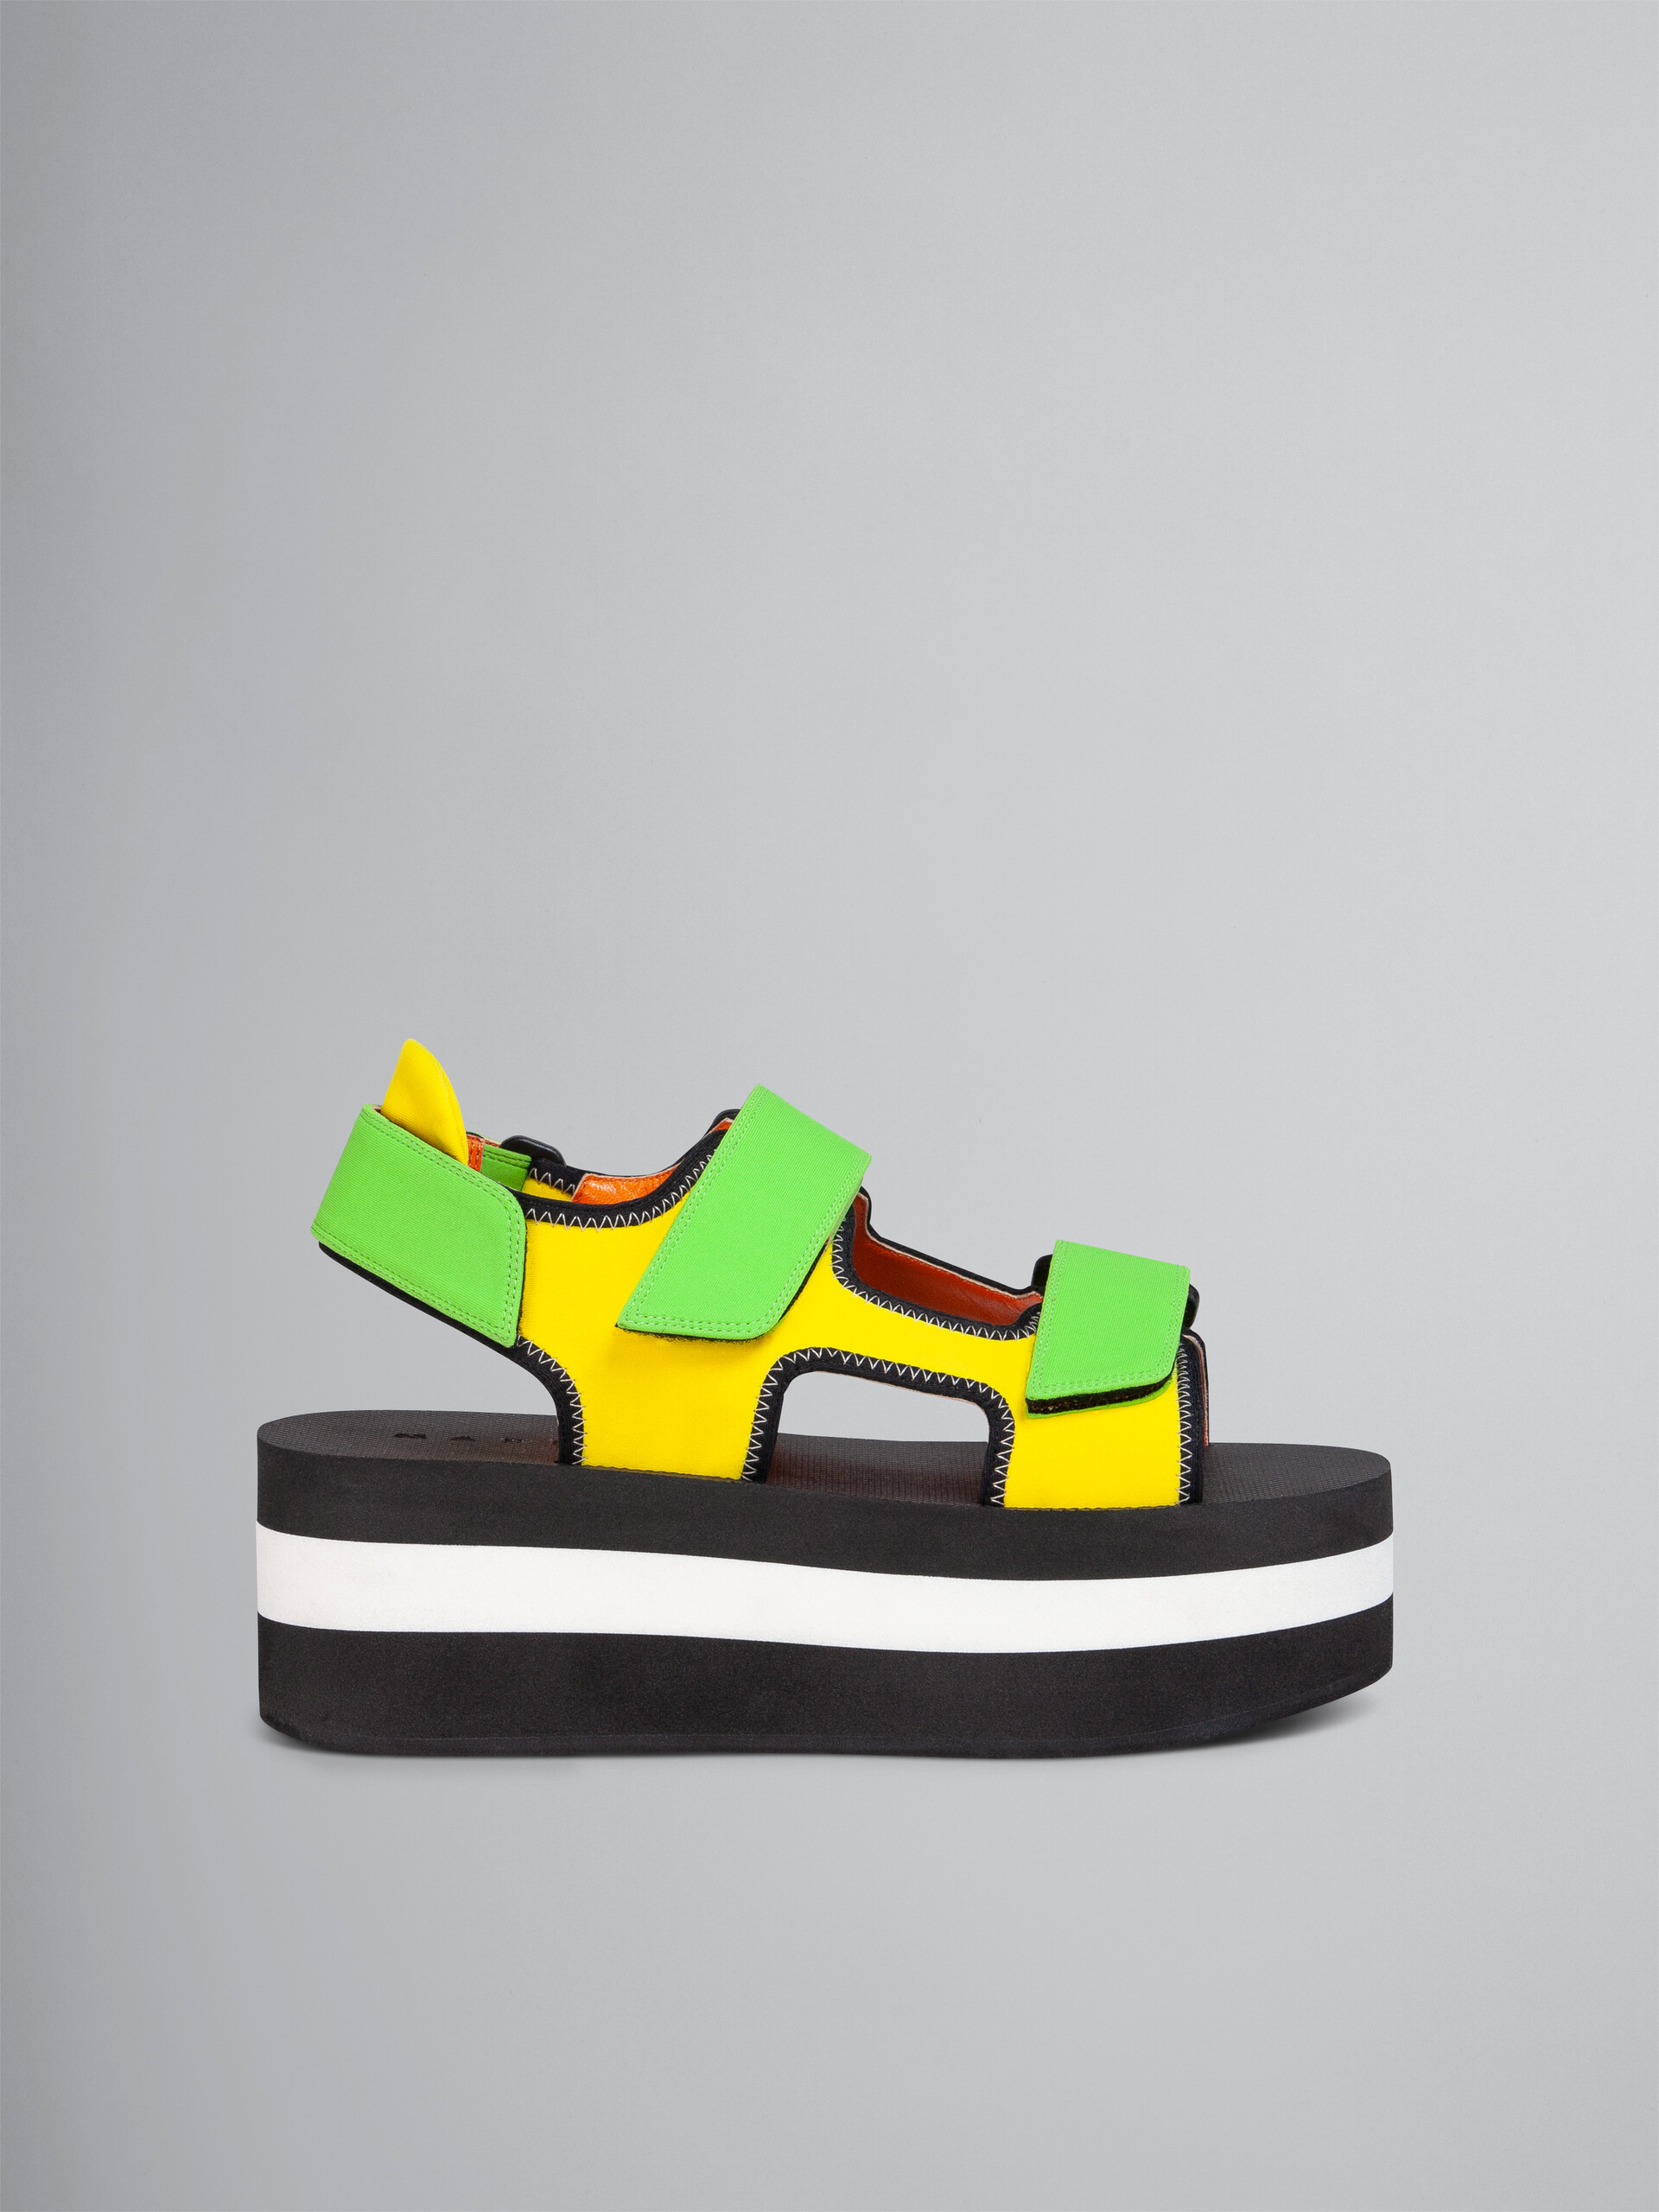 Sandalo in tessuto tecnico giallo e verde - Sandali - Image 1